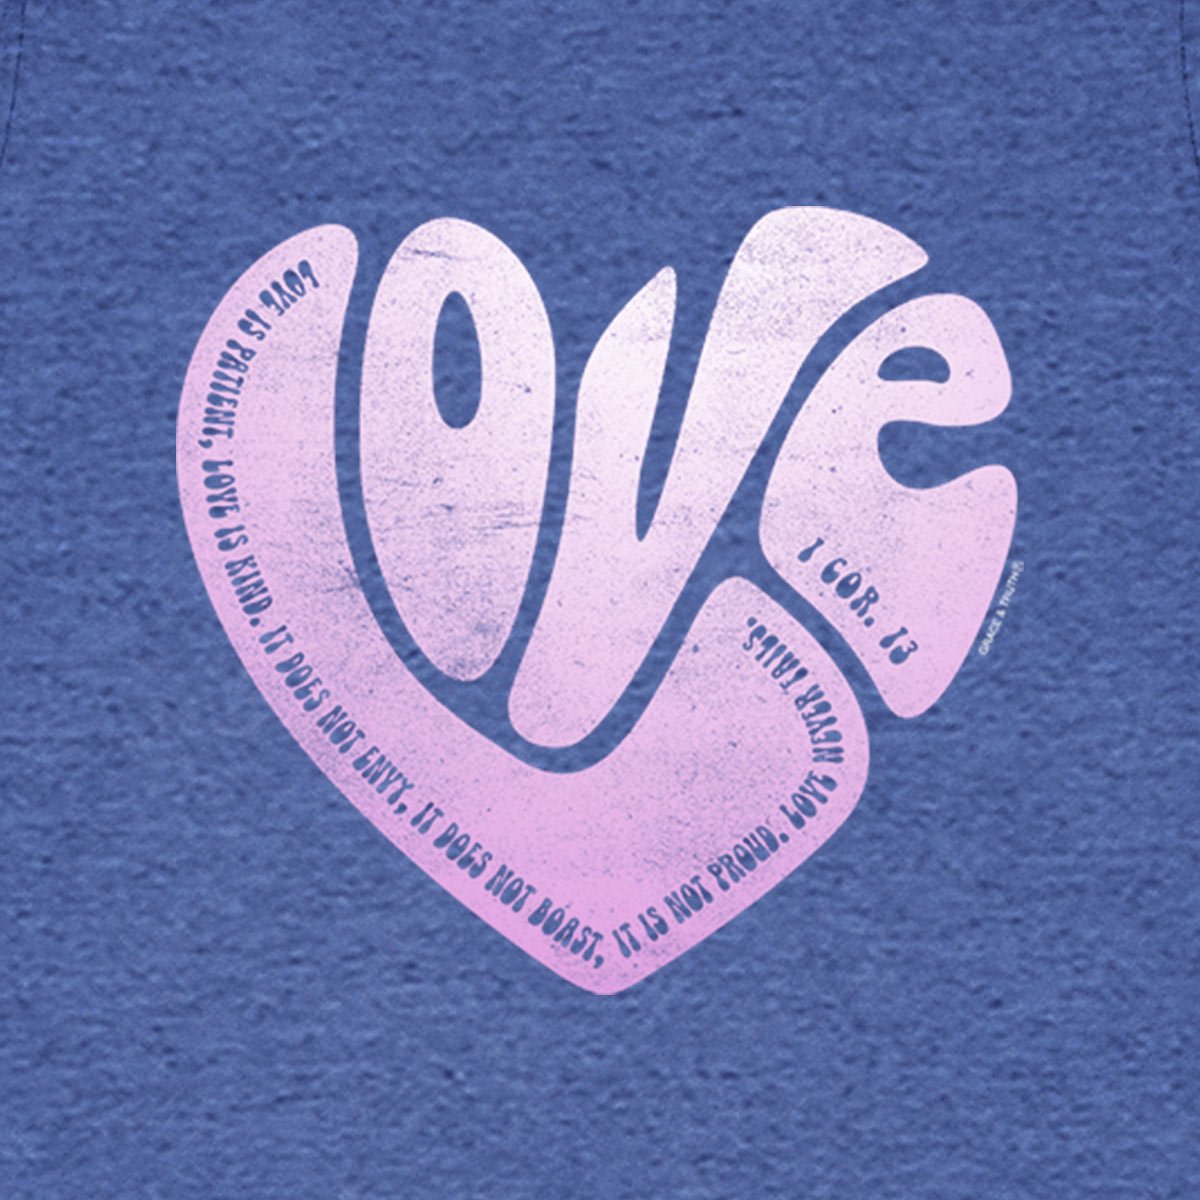 grace & truth Womens T-Shirt Love Heart | 2FruitBearers